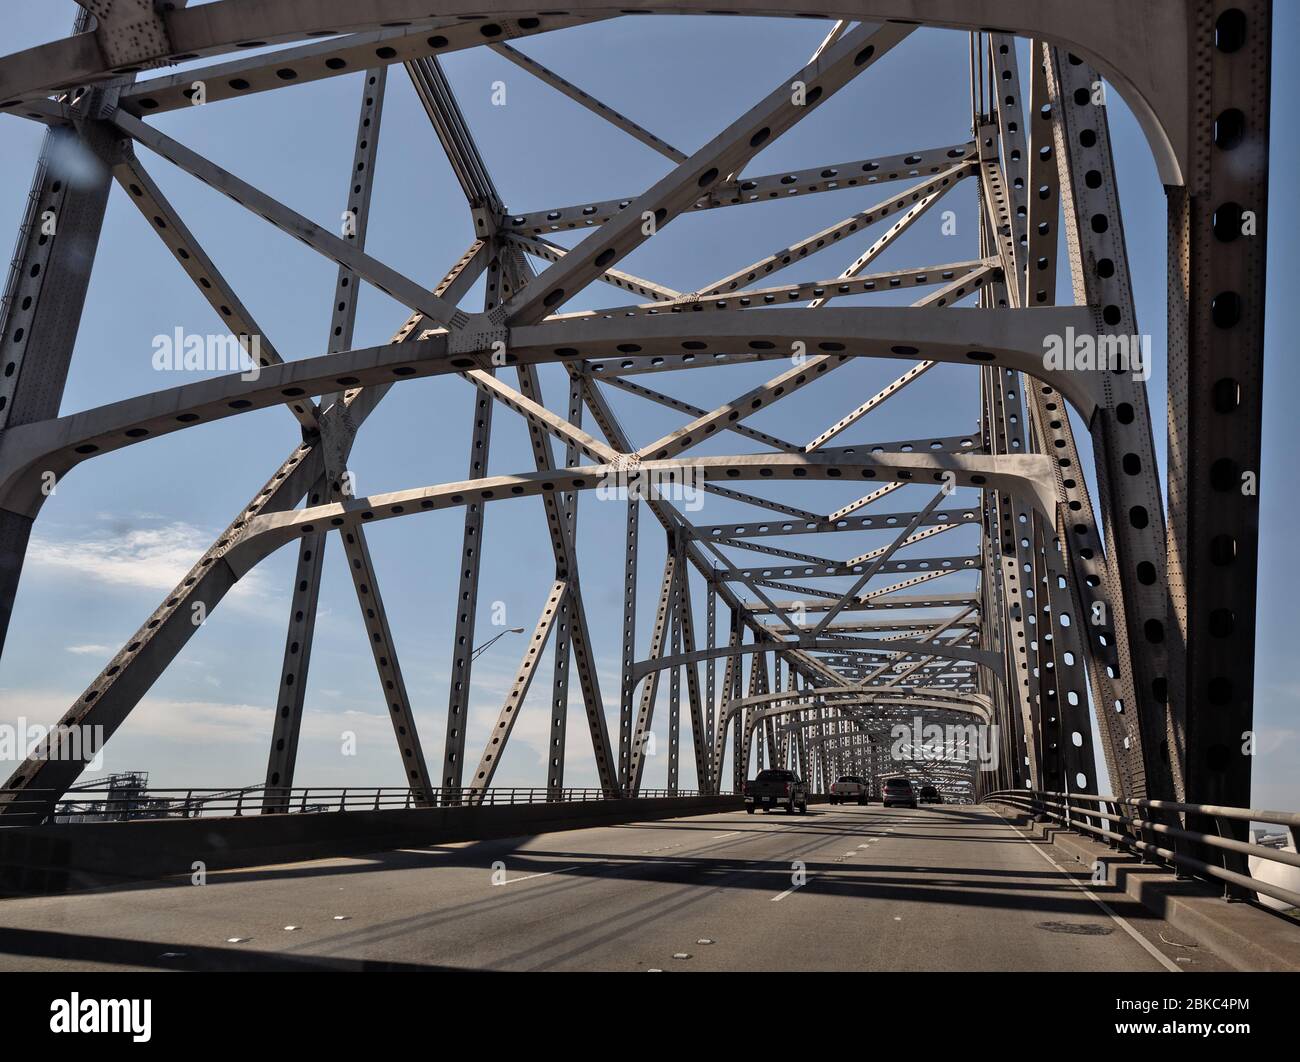 Baton Rouge, Louisiana, USA - 2020: Il ponte Horace Wilkinson porta l'Interstate 10 in Louisiana attraverso il fiume Mississippi fino a Port Allen. Foto Stock